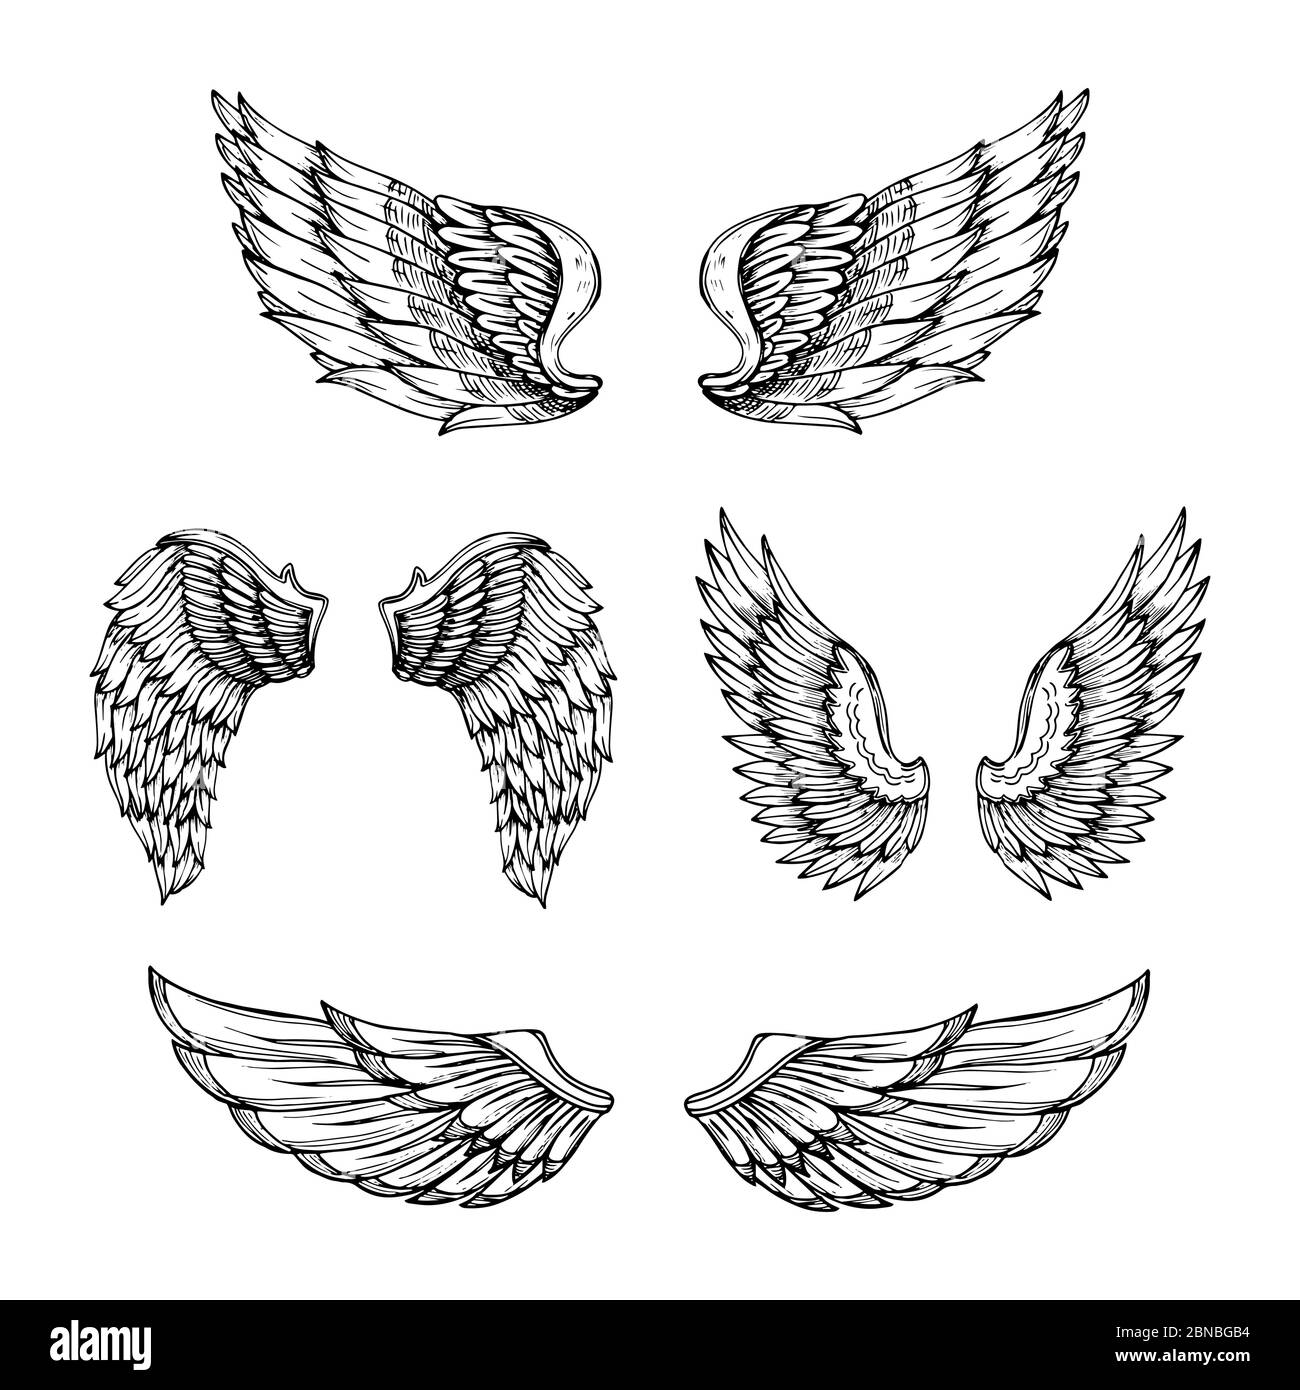 Ala disegnata a mano. Disegnare le ali dell'angelo con le piume. Disegno del tatuaggio vettoriale isolato. Disegno di disegno di disegno di disegno di angelo dell'ala, di disegno di piuma dell'uccello Illustrazione Vettoriale